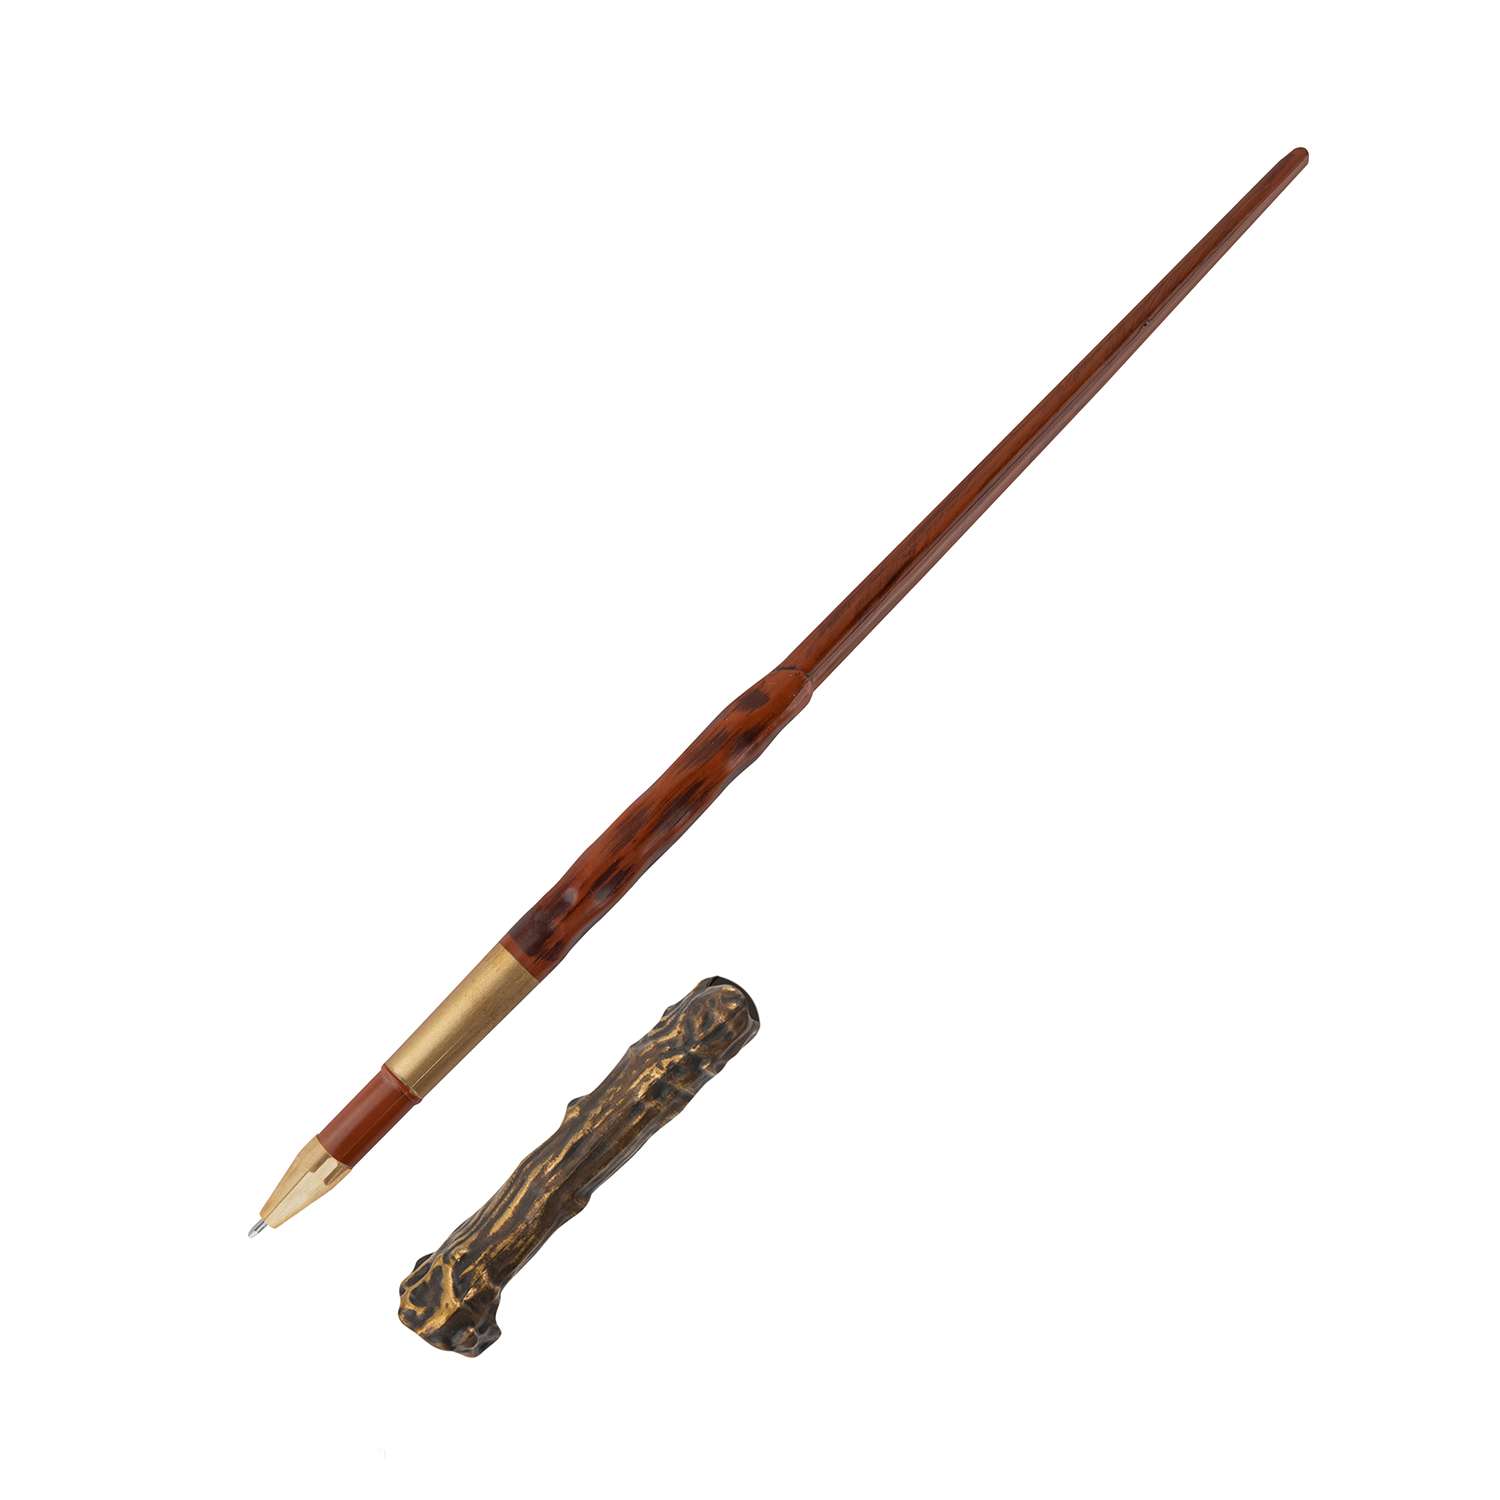 Ручка Harry Potter в виде палочки Гарри Поттера 25 см с подставкой и закладкой - фото 3